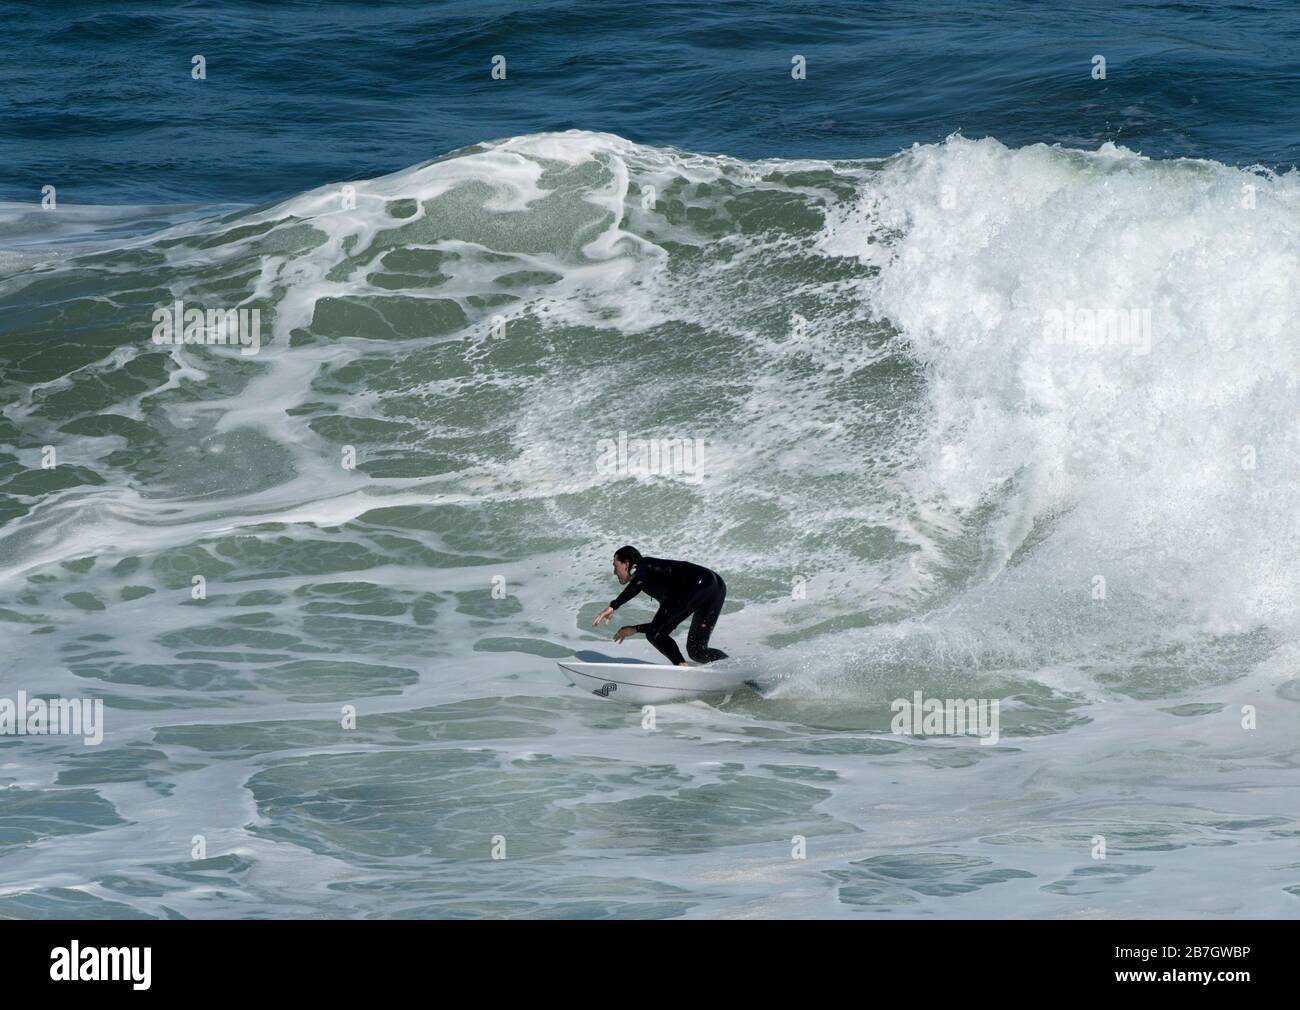 Surfing at Winkipop Stock Photo